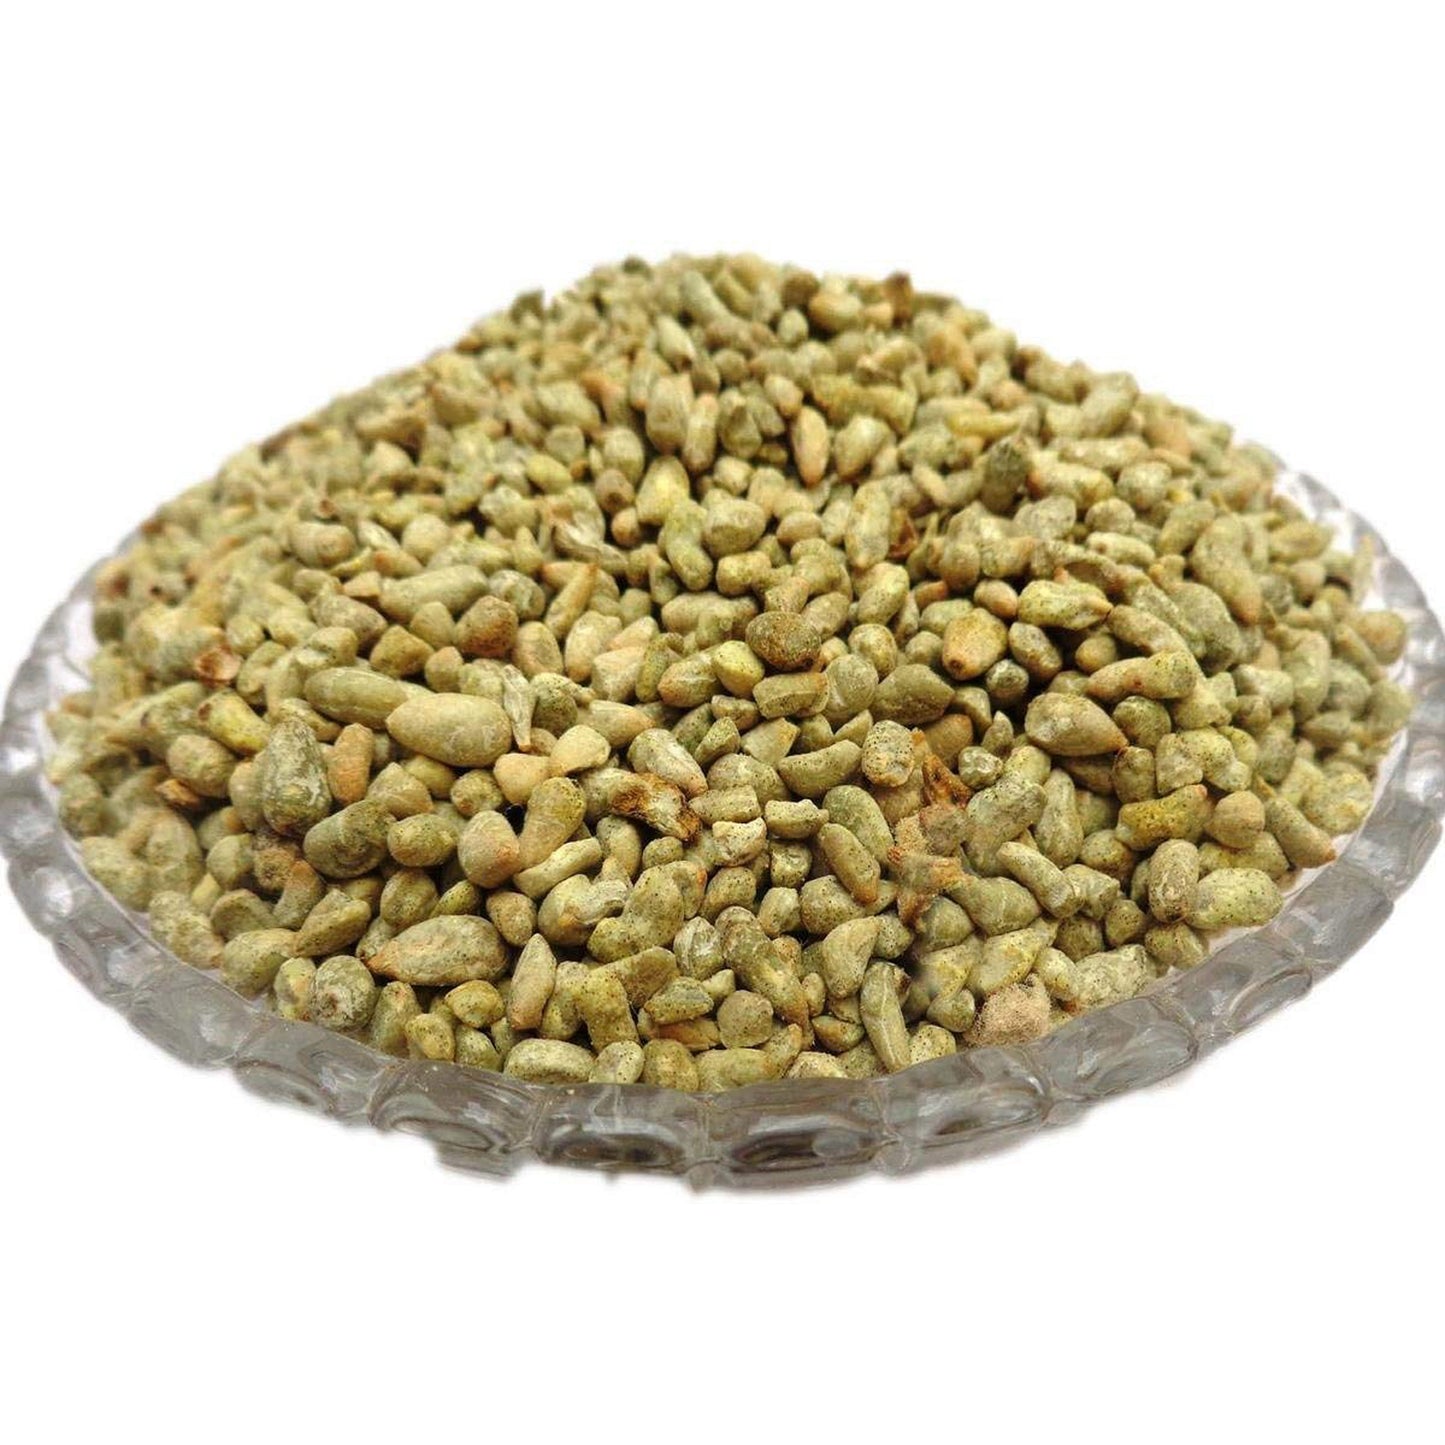 Pamba Dana - Binola Giri - Gossypium herbaceum - Cotton Seeds